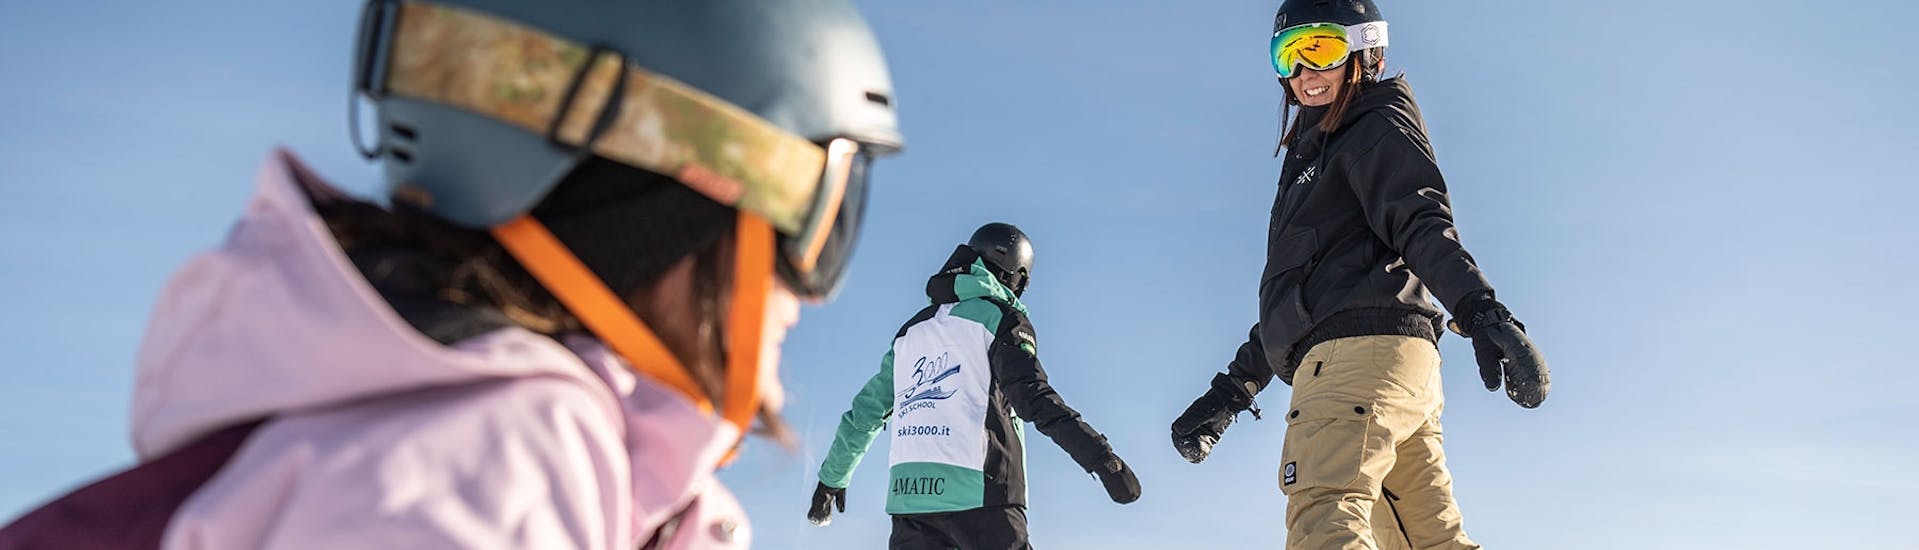 Snowboarder fanno una discesa durante le Lezioni di snowboard (dagli 8 anni) per tutti i livelli con Skischool Schlern 3000 Alpe di Siusi.